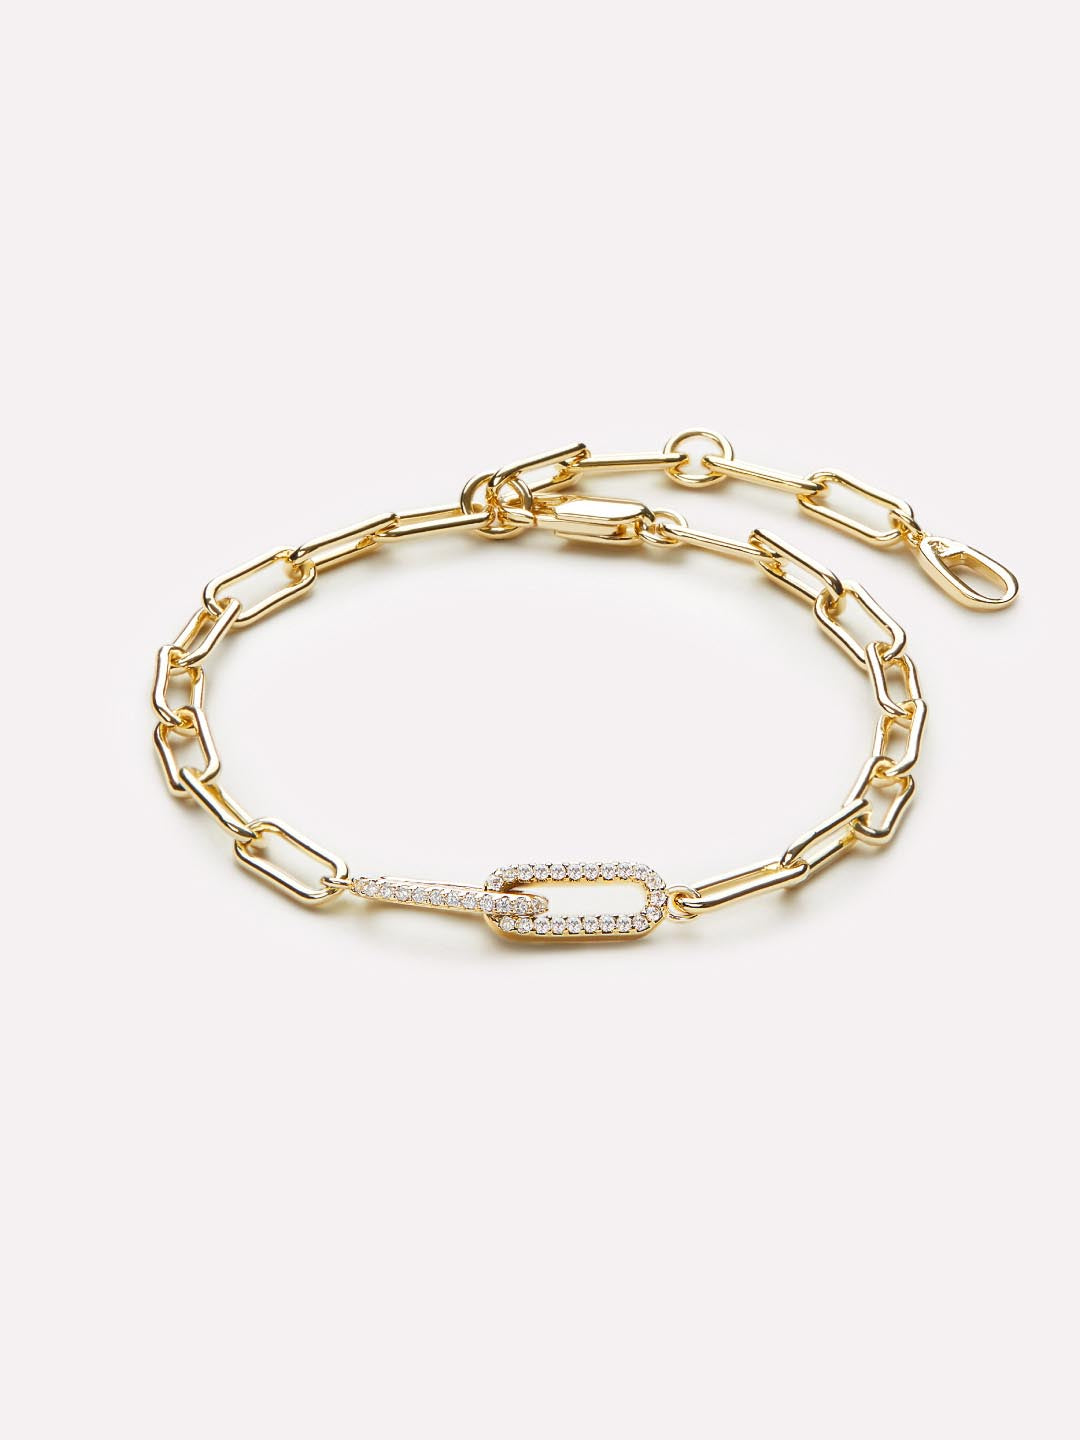 Buy Spiral Bracelet, Golden Sterling Silver Spiral, Ancient Minoans Greek  Jewelry, Bijoux Grec, Griechischen Schmuck, Spiral Greco Argento Online in  India - Etsy